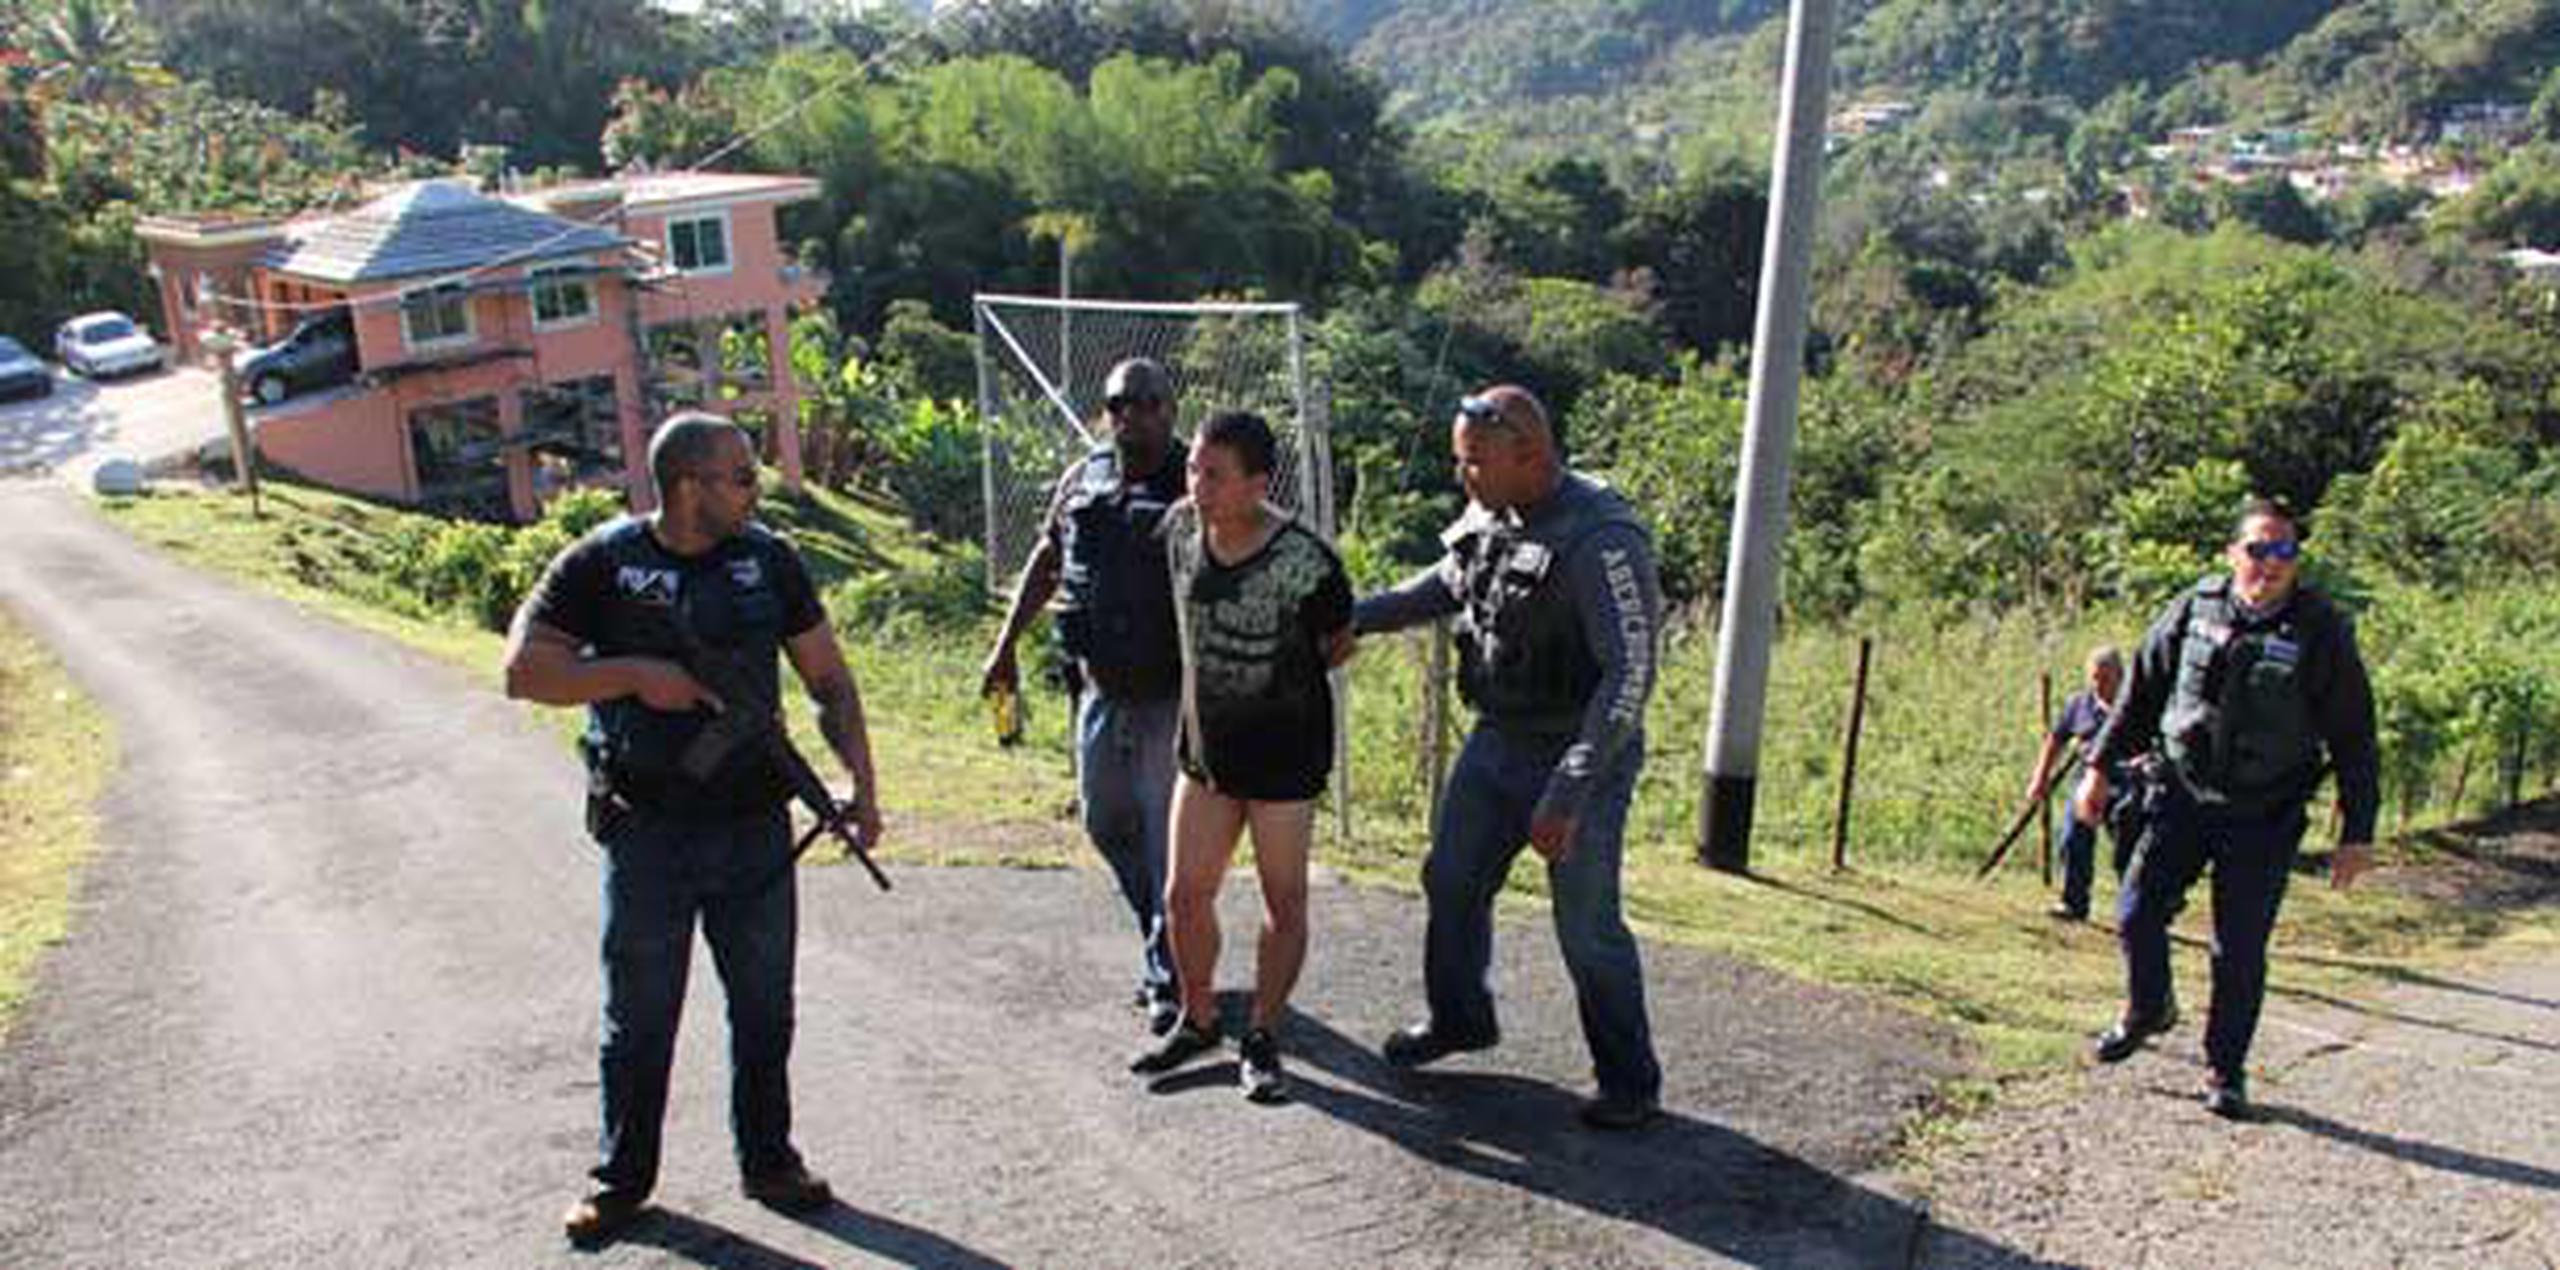 La Policía arrestó a dos personas sospechosas de la muerte del policía Joaquín Correa Ortega.  (alex.figueros@gfrmedia.com)